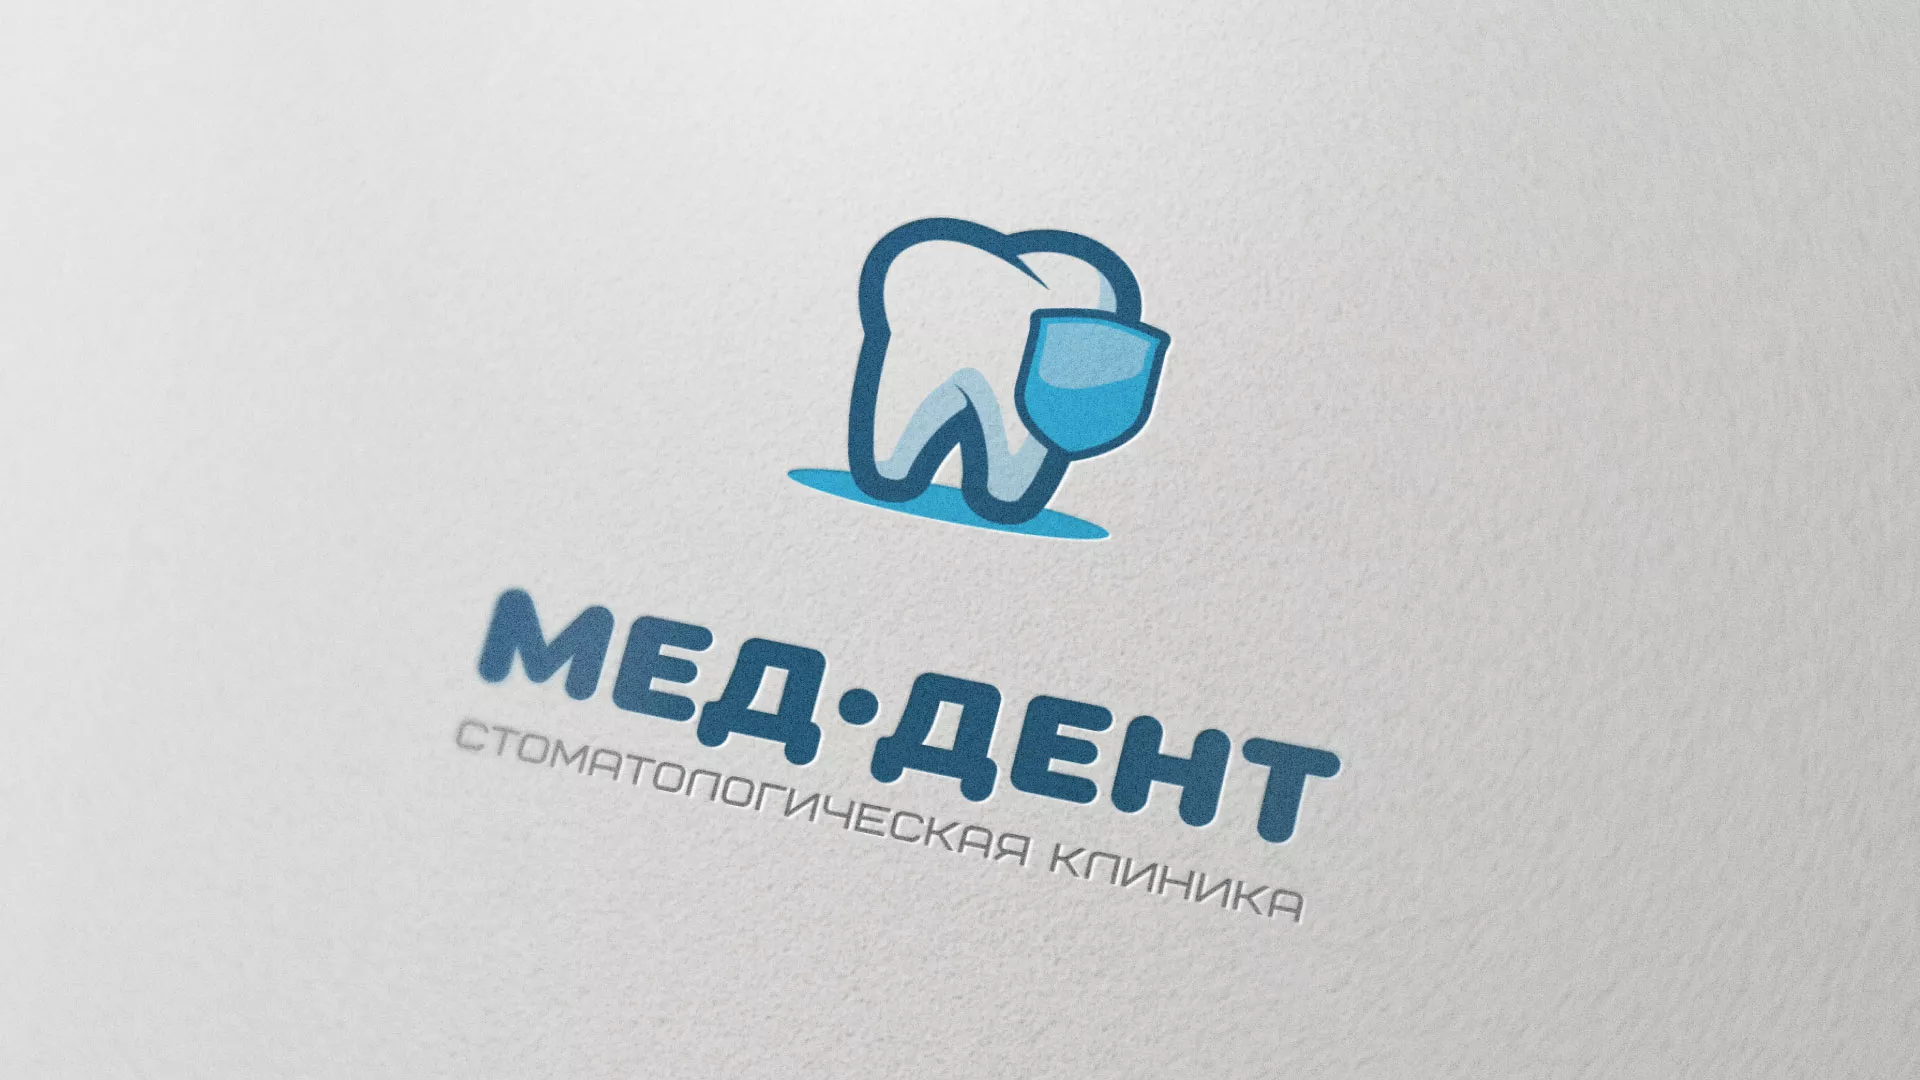 Разработка логотипа стоматологической клиники «МЕД-ДЕНТ» в Болохово